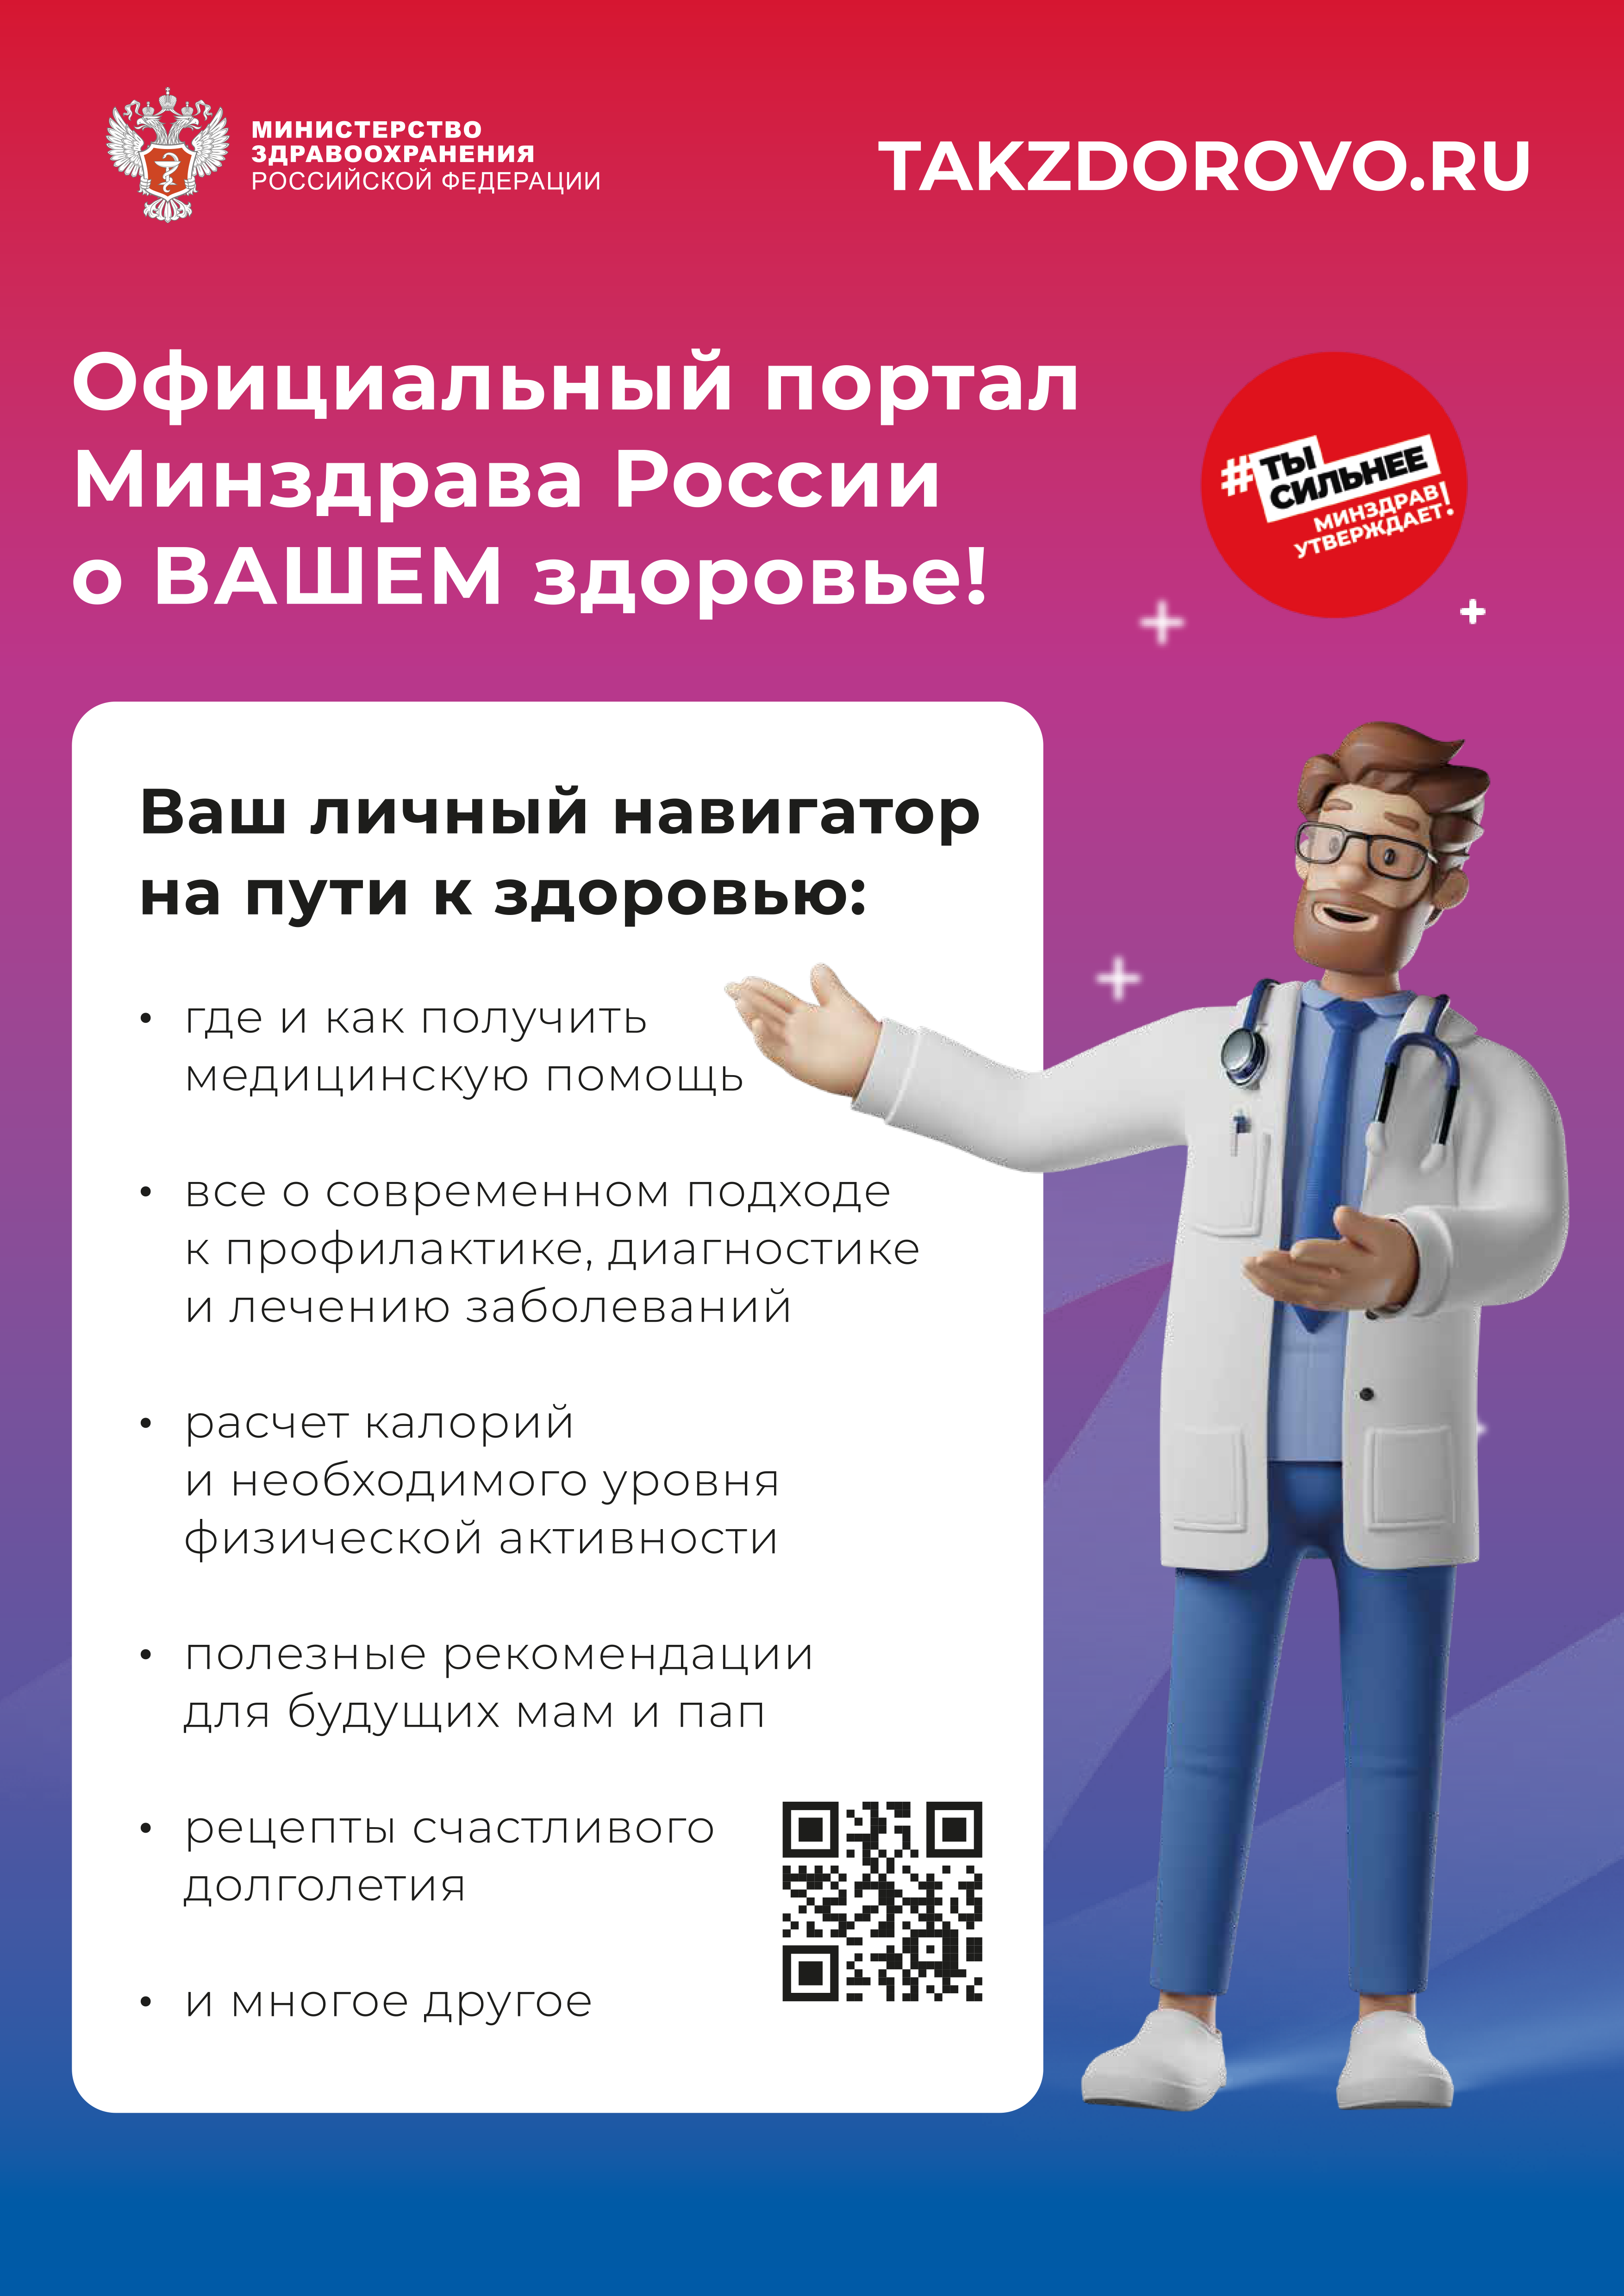 ТАКЗДОРОВО - официальный портал Минздрава России о ВАШЕМ здоровье!